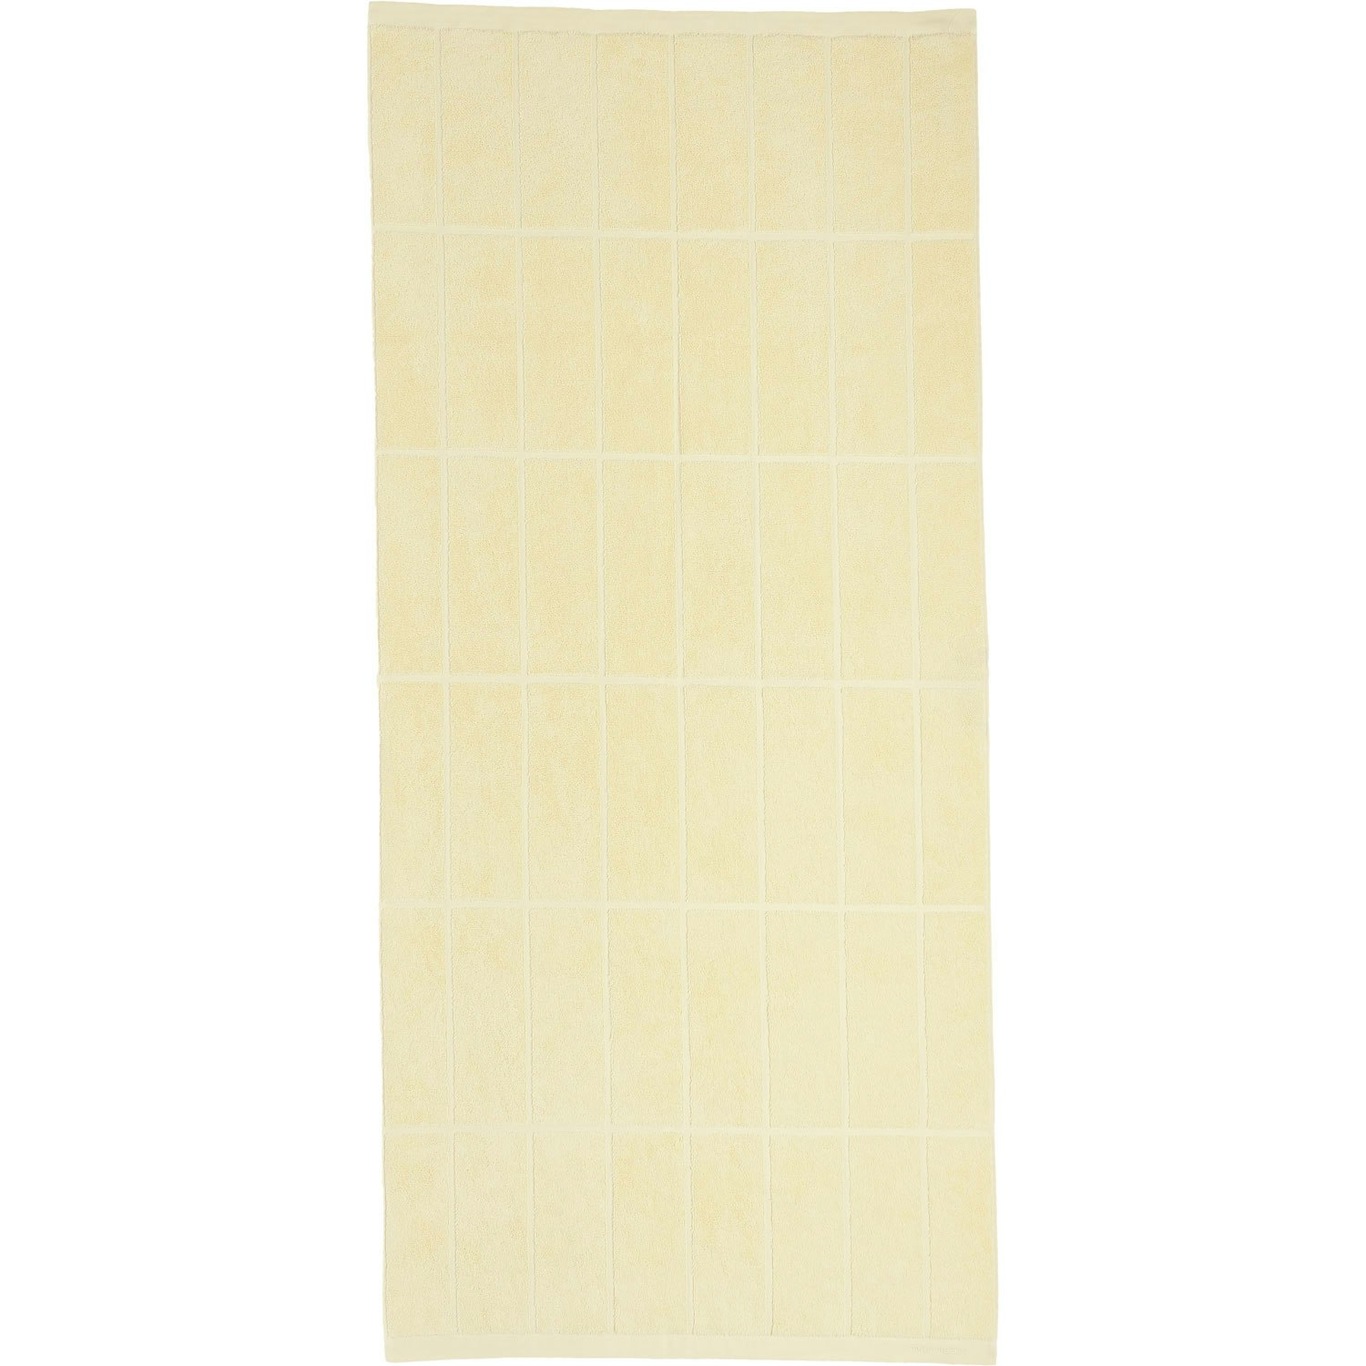 Tiiliskivi Handduk 70x150 cm, Butter Yellow